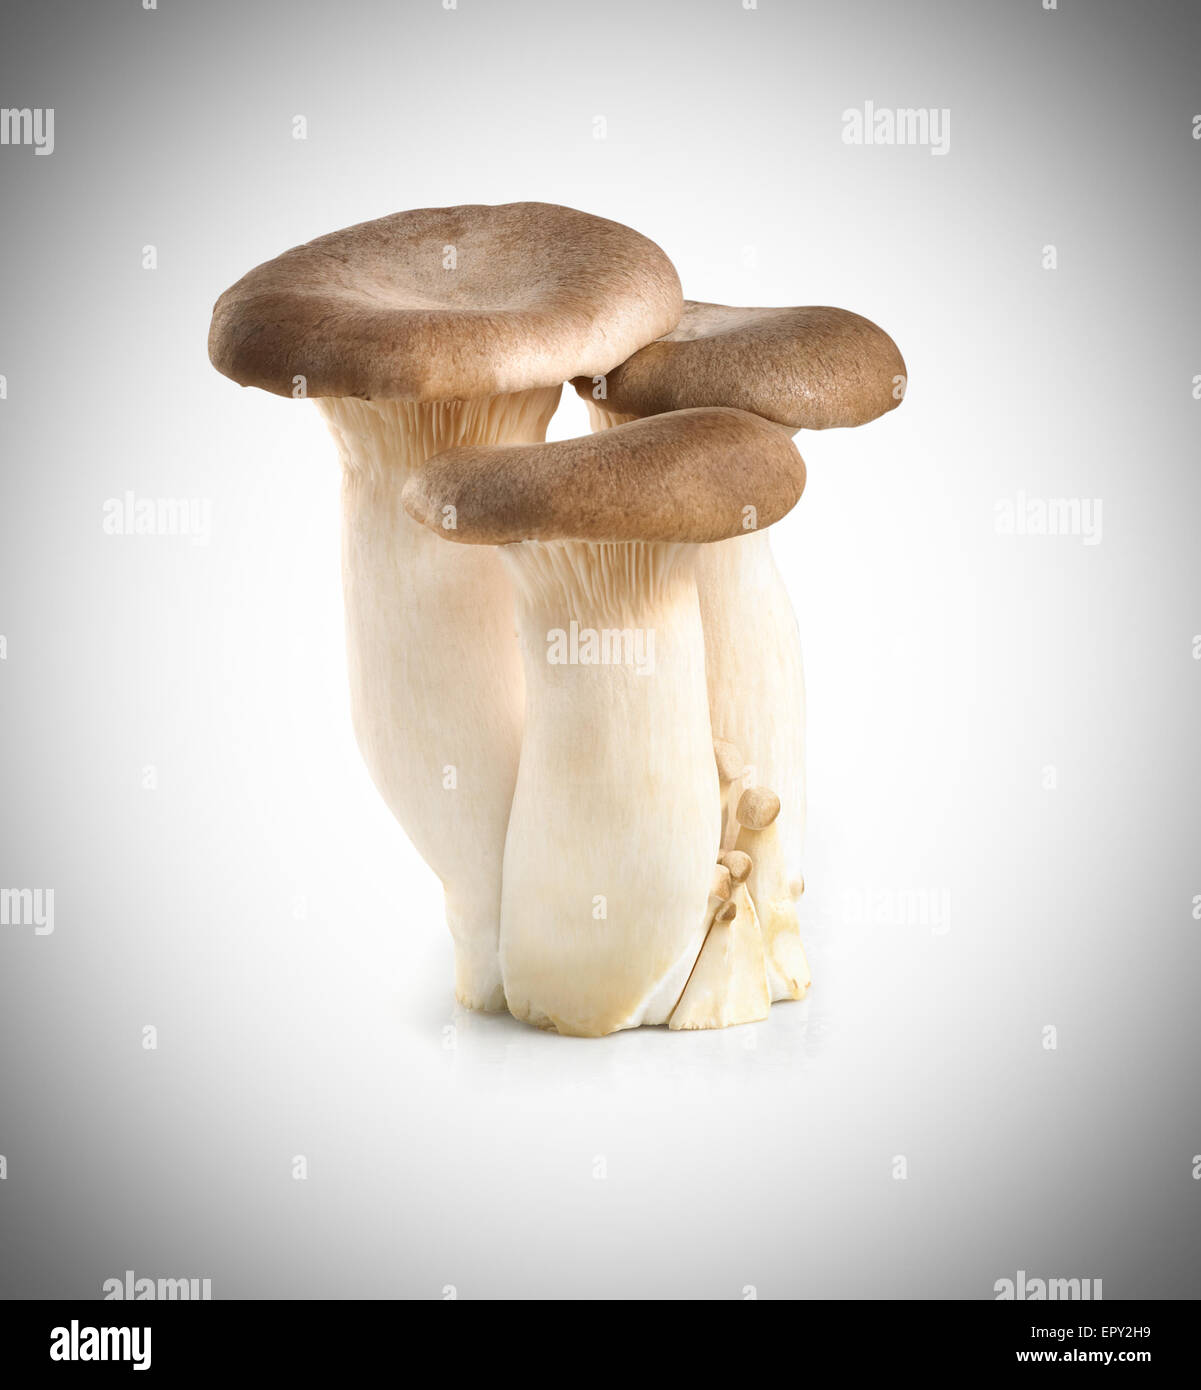 Straw mushrooms isolated on white background Stock Photo - Alamy